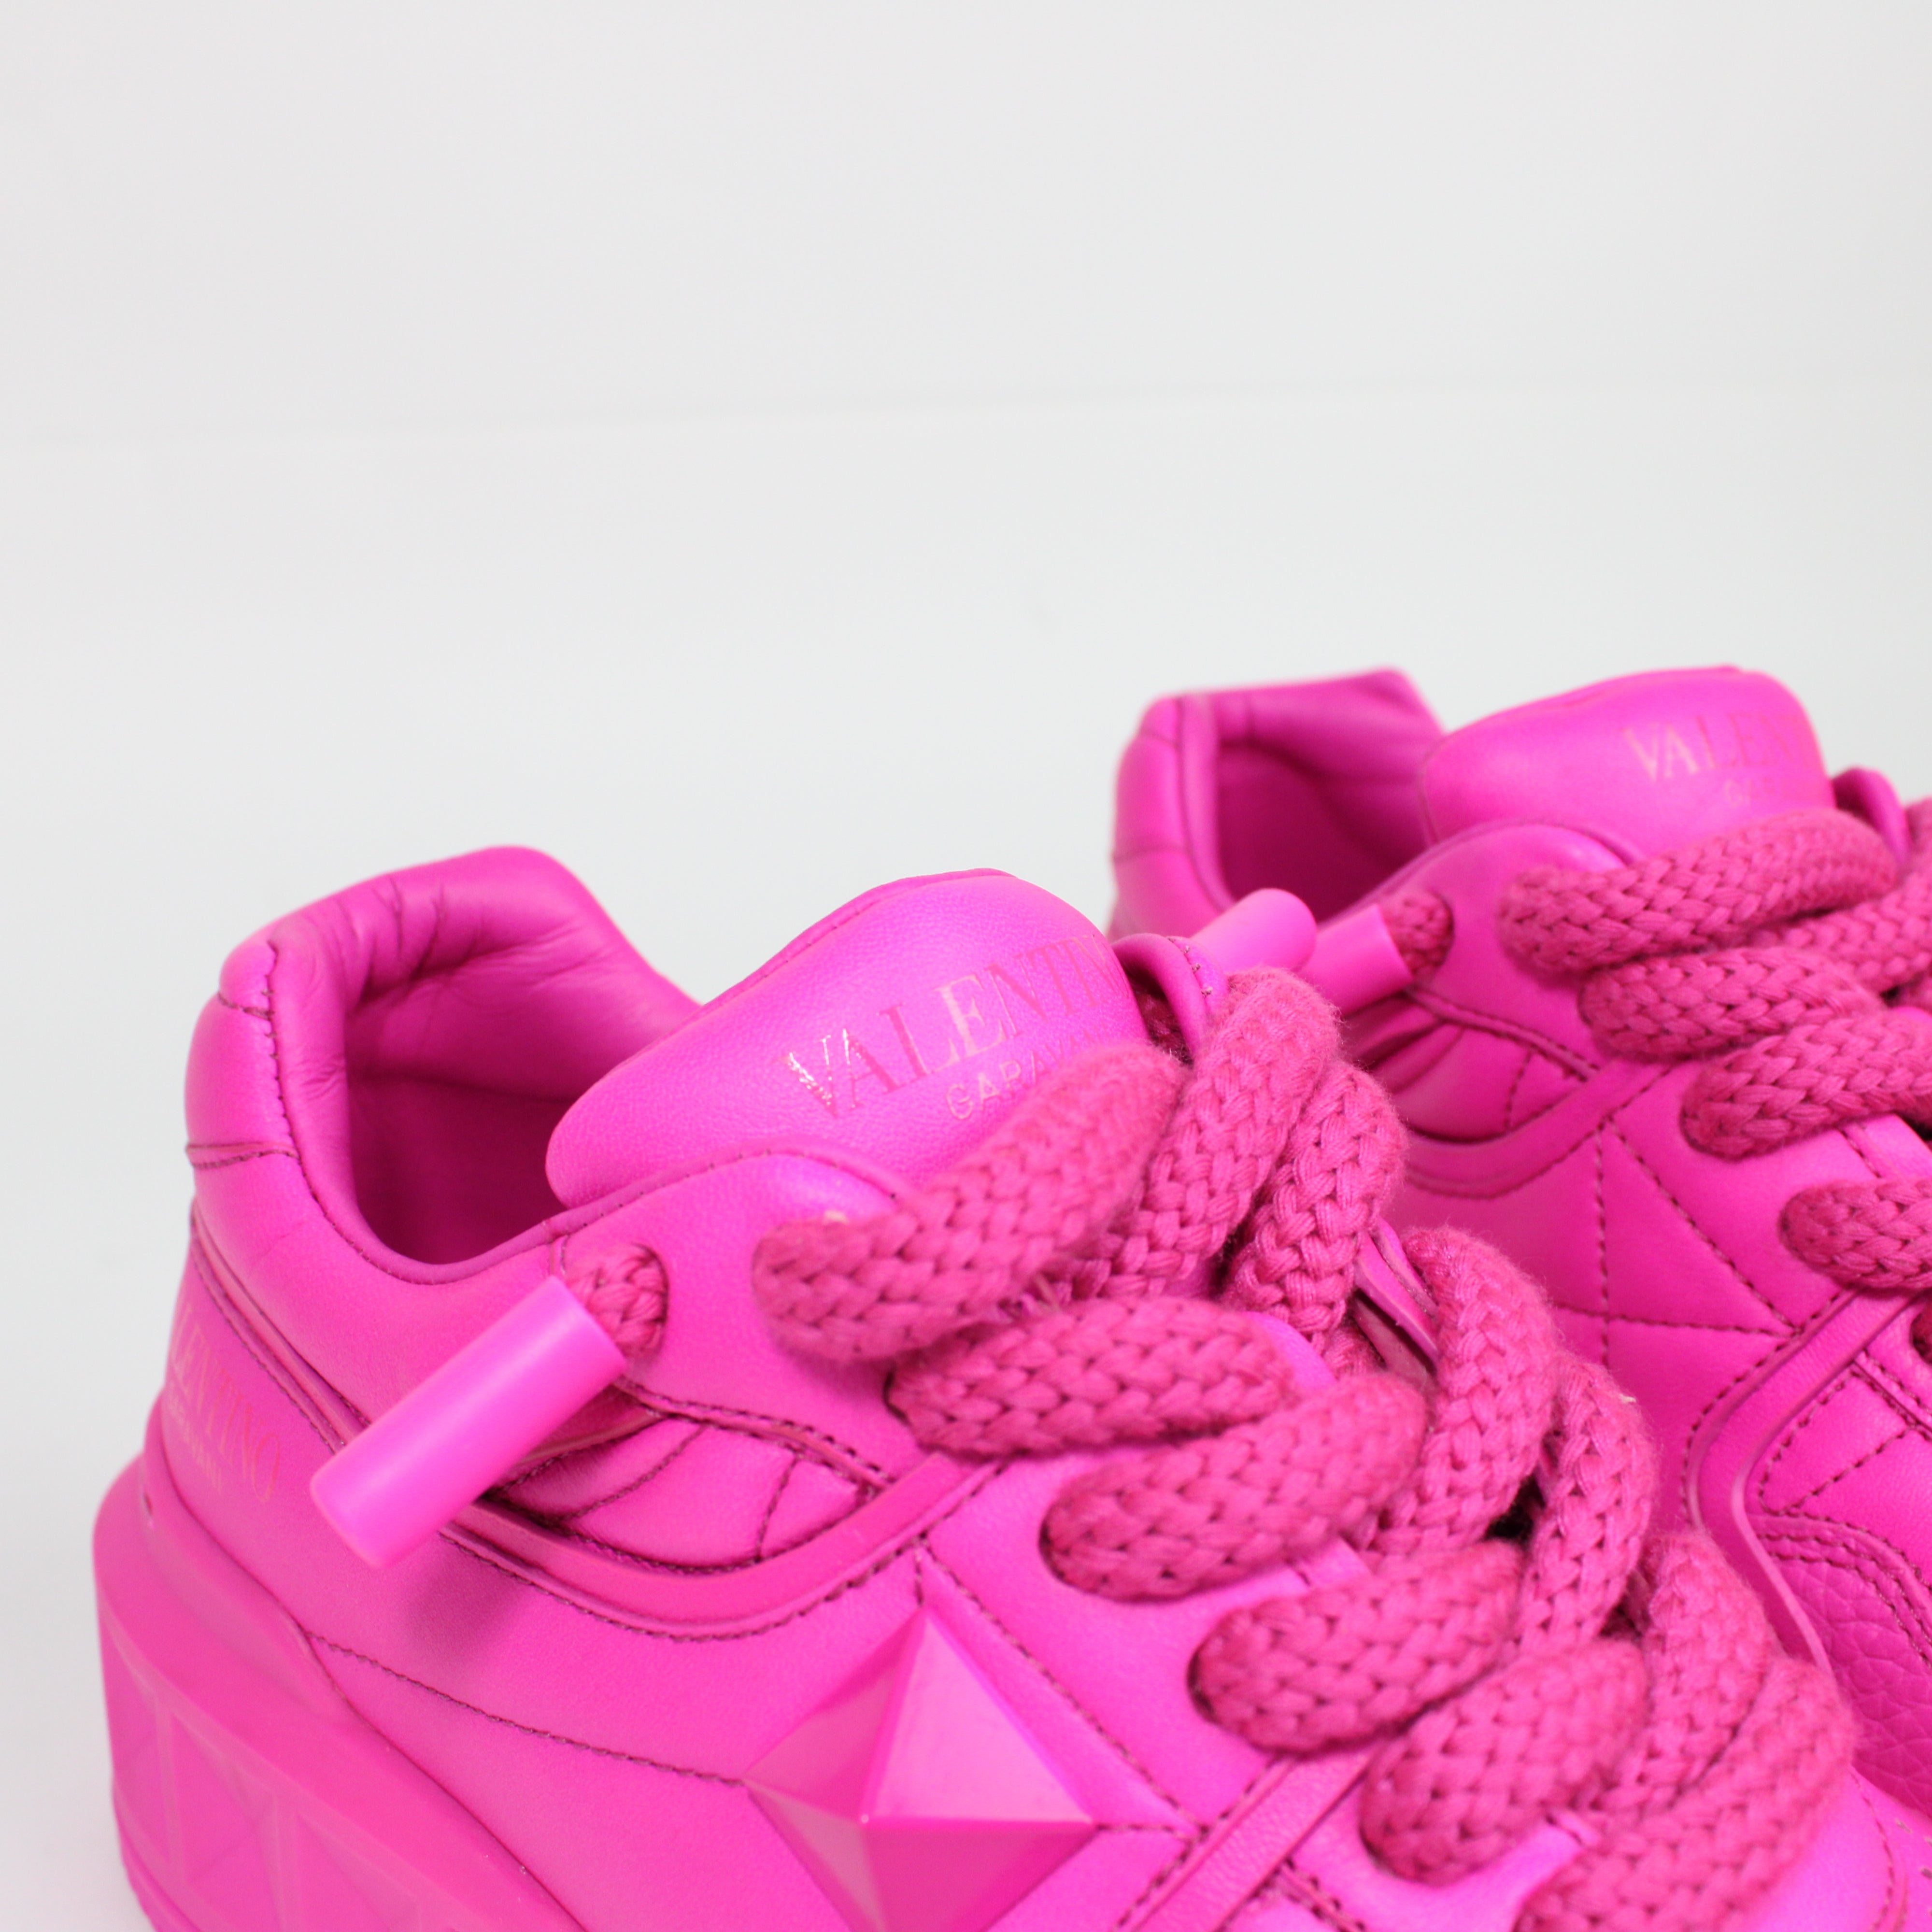 Valentino Garavani One Stud XL PP Pink Sneakers Taglia 37